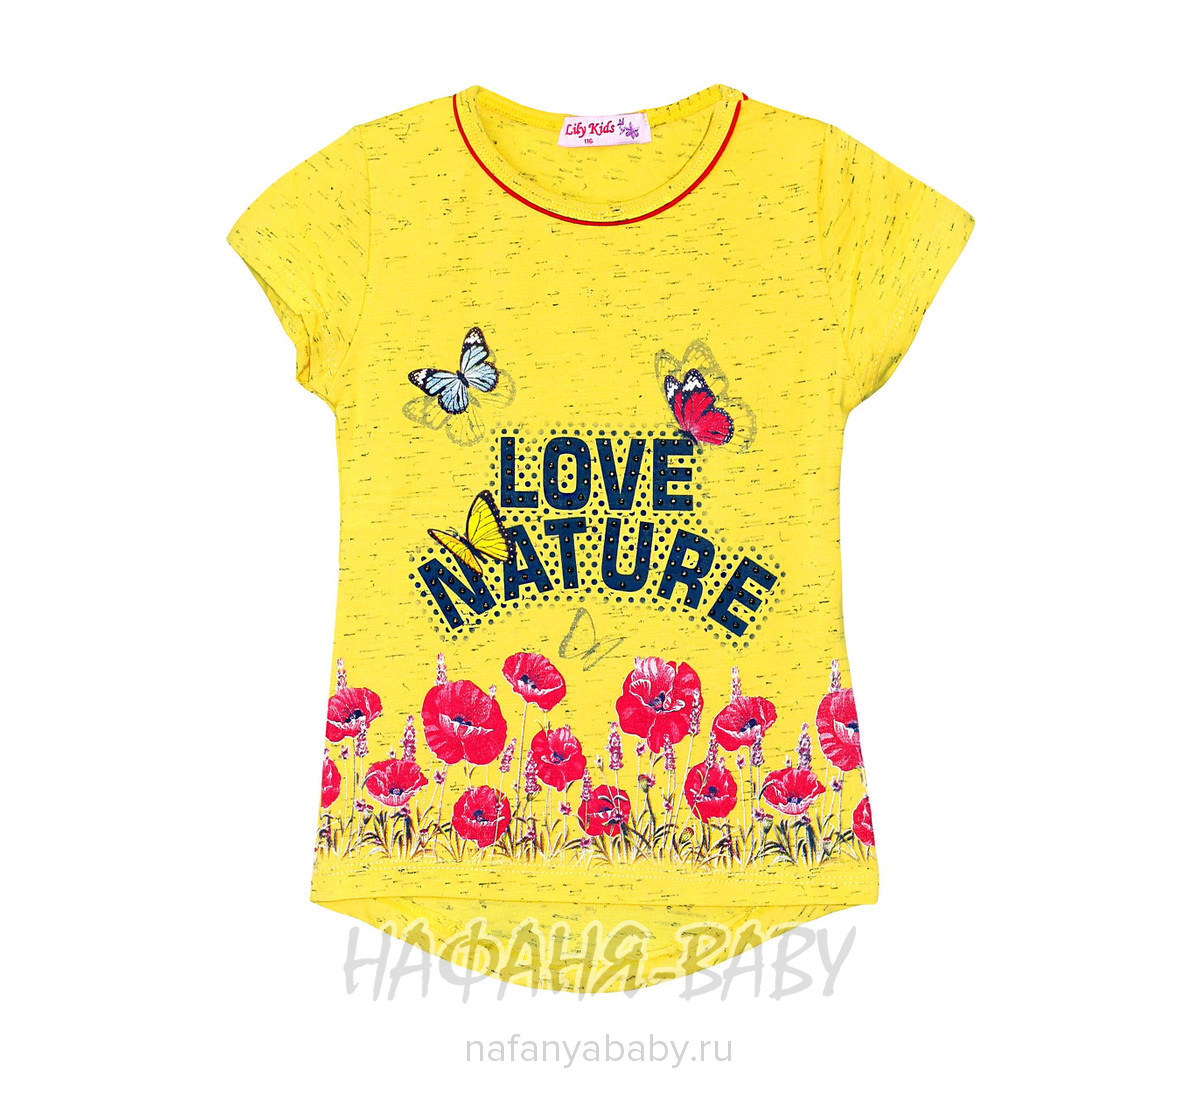 Детская футболка LILY Kids, купить в интернет магазине Нафаня. арт: 3507.